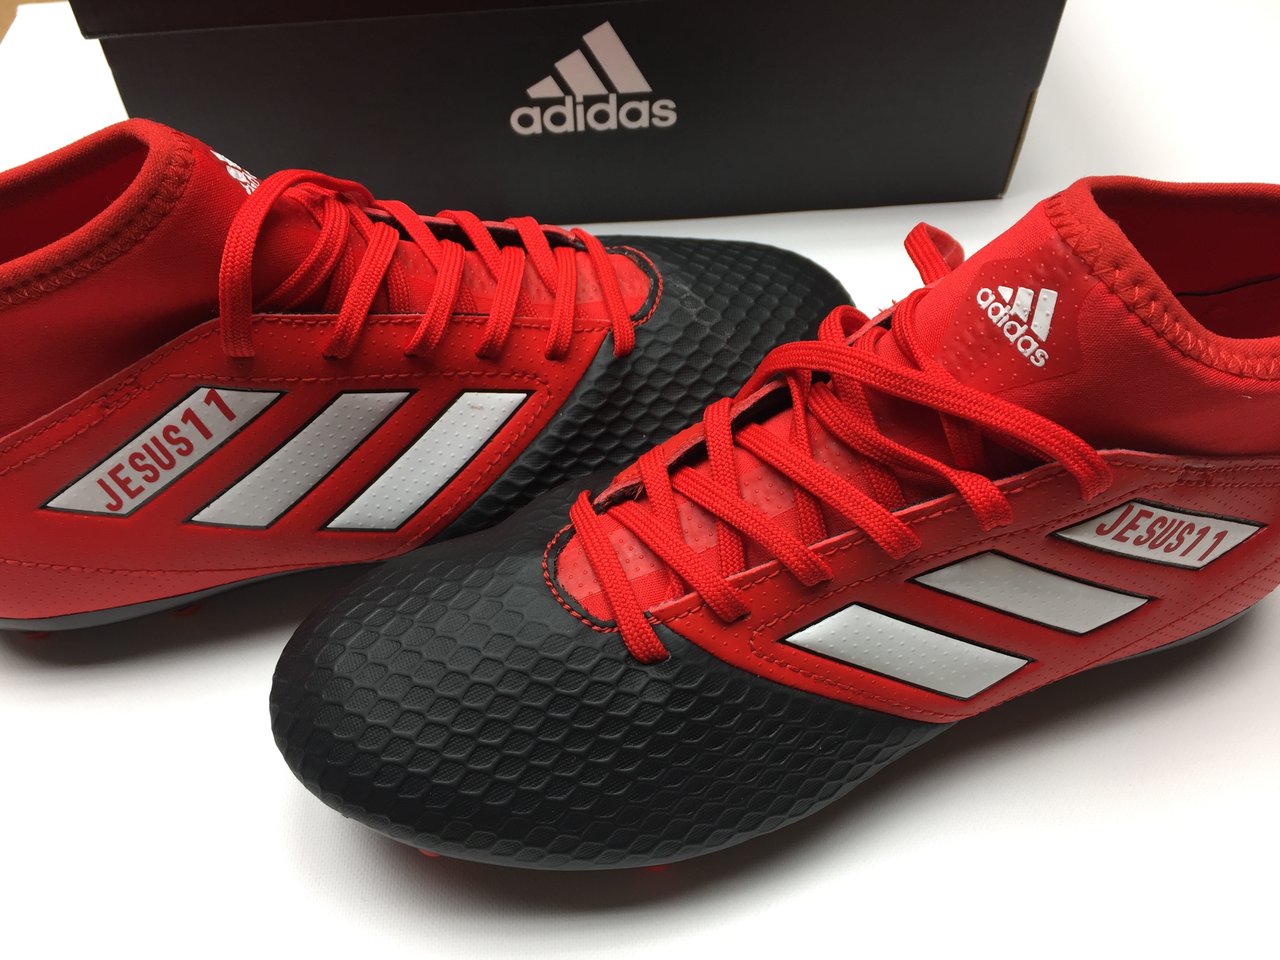 personalizamos tus botas de fútbol - - zapatillas - tienda - online - javea